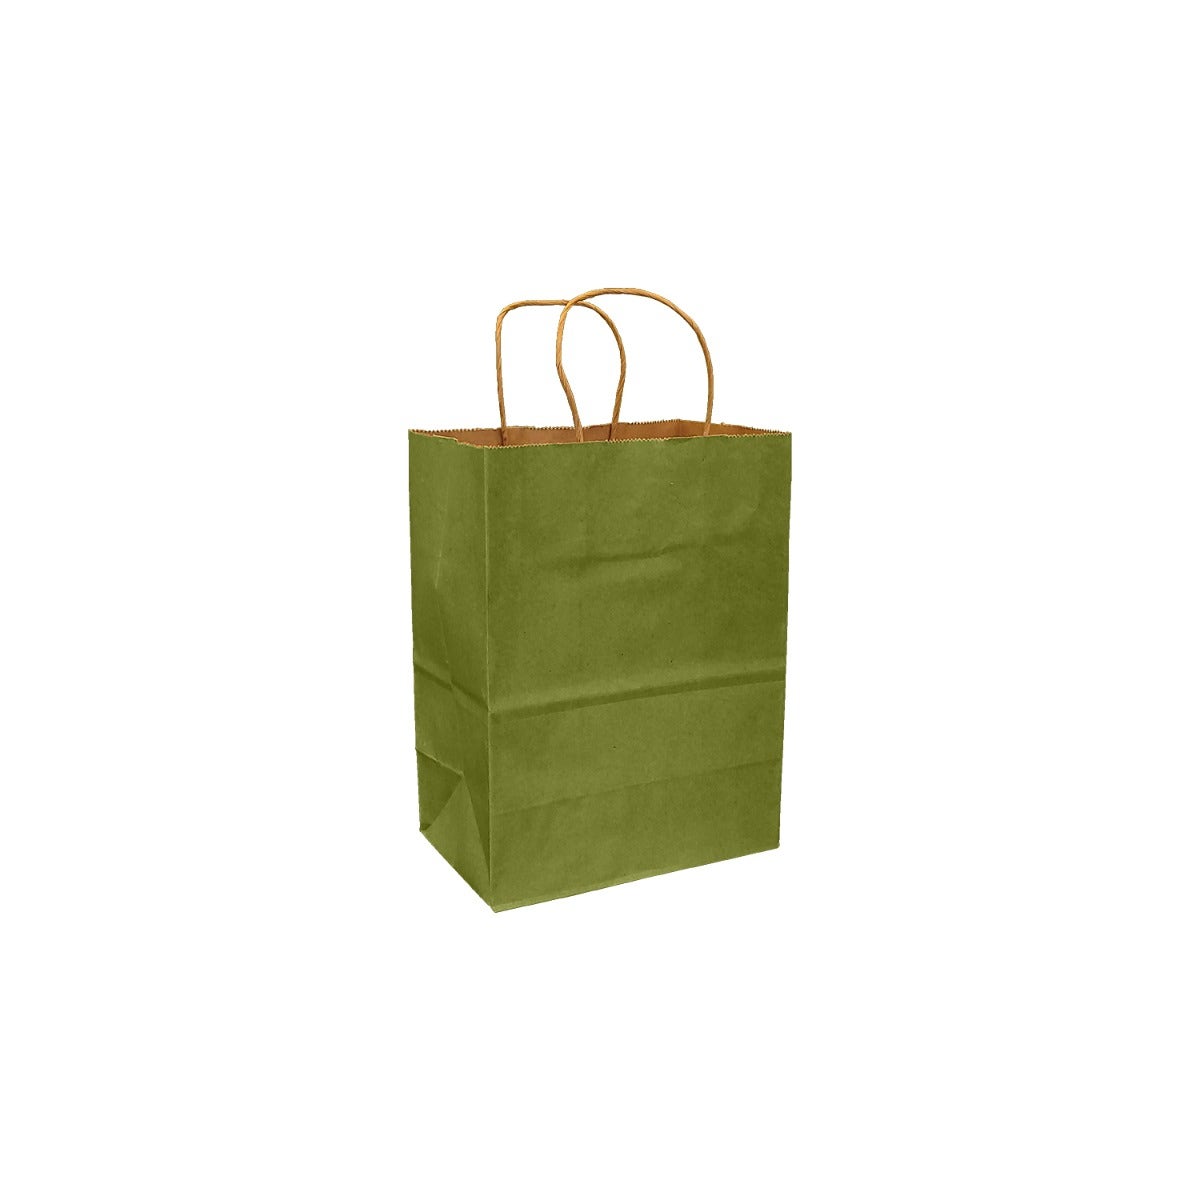 Leaf Green 100% Recycled Kraft Paper Bags With Handles - Eddie's Hang-Up Display Ltd.